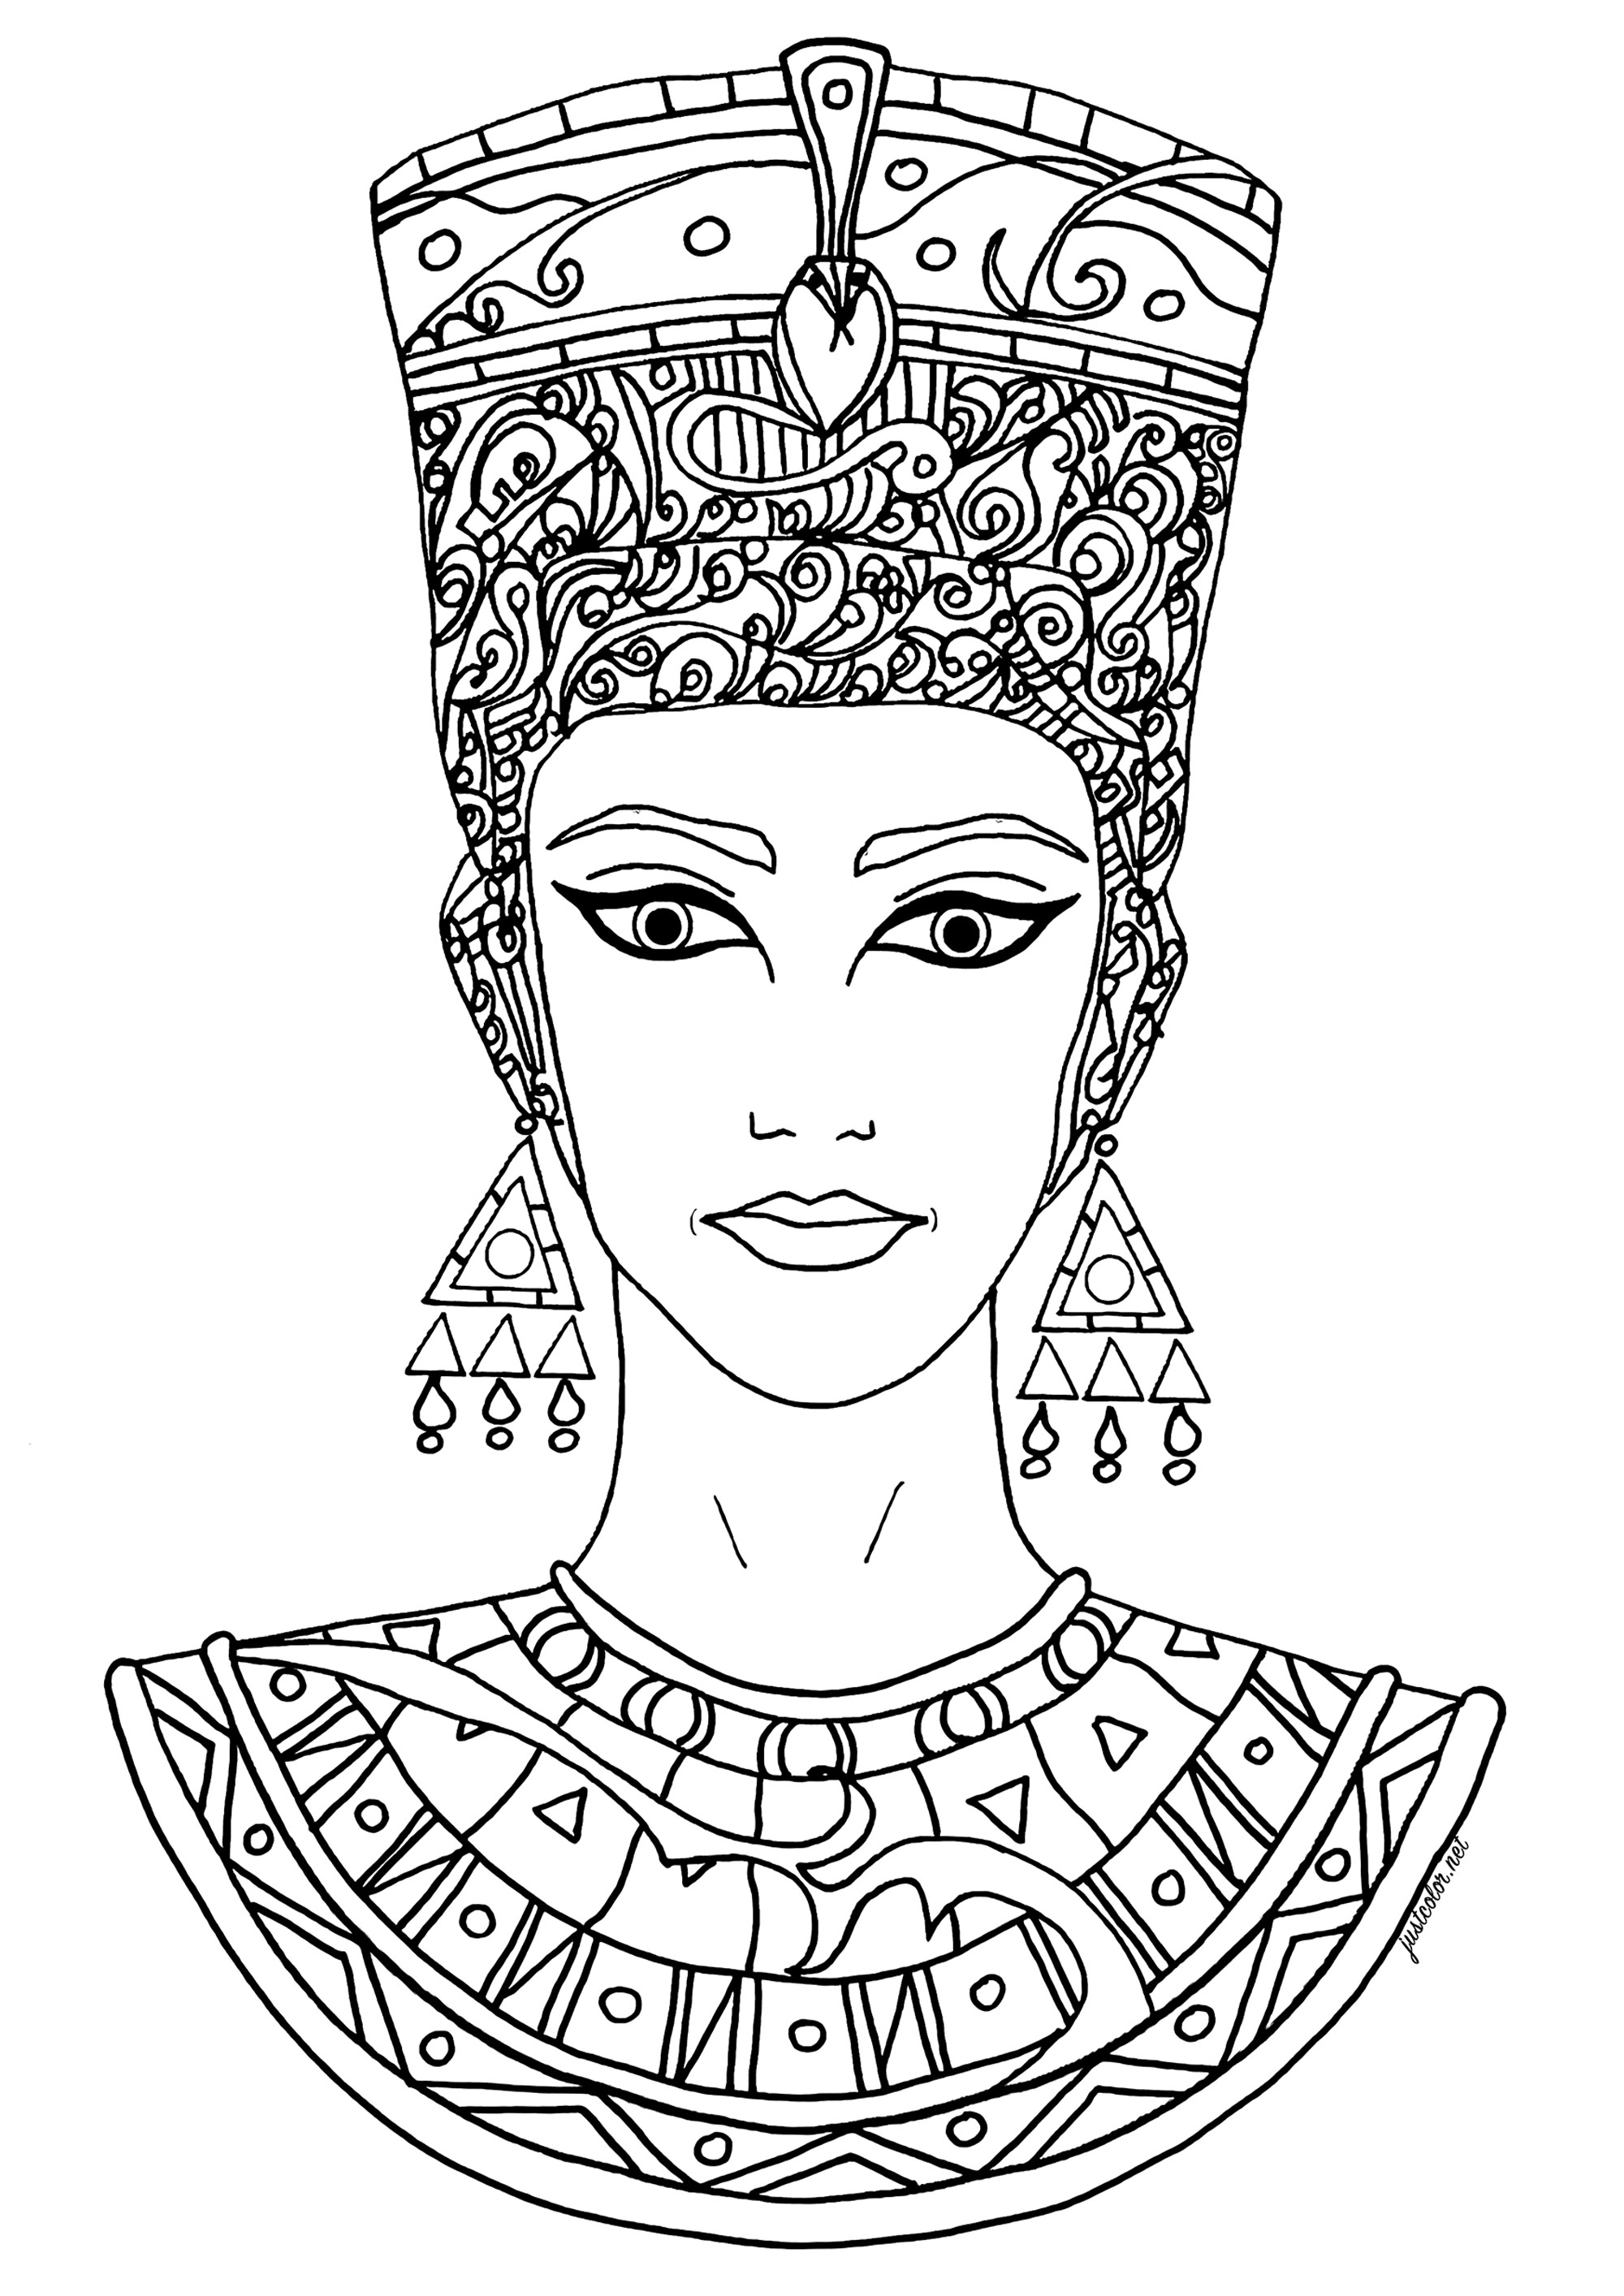 Joli dessin librement inspiré par Nefertiti. Nefertiti était une reine de l'Égypte ancienne, épouse du pharaon Akhenaton qui régna vers 1353-1336 av. J.-C. Elle est surtout connue pour son rôle dans la révolution religieuse d'Akhenaton, qui a vu le culte de l'Aton, le dieu soleil, devenir la religion dominante de l'Égypte, et pour son buste célèbre, qui est considéré comme l'une des œuvres les plus importantes de l'art égyptien.